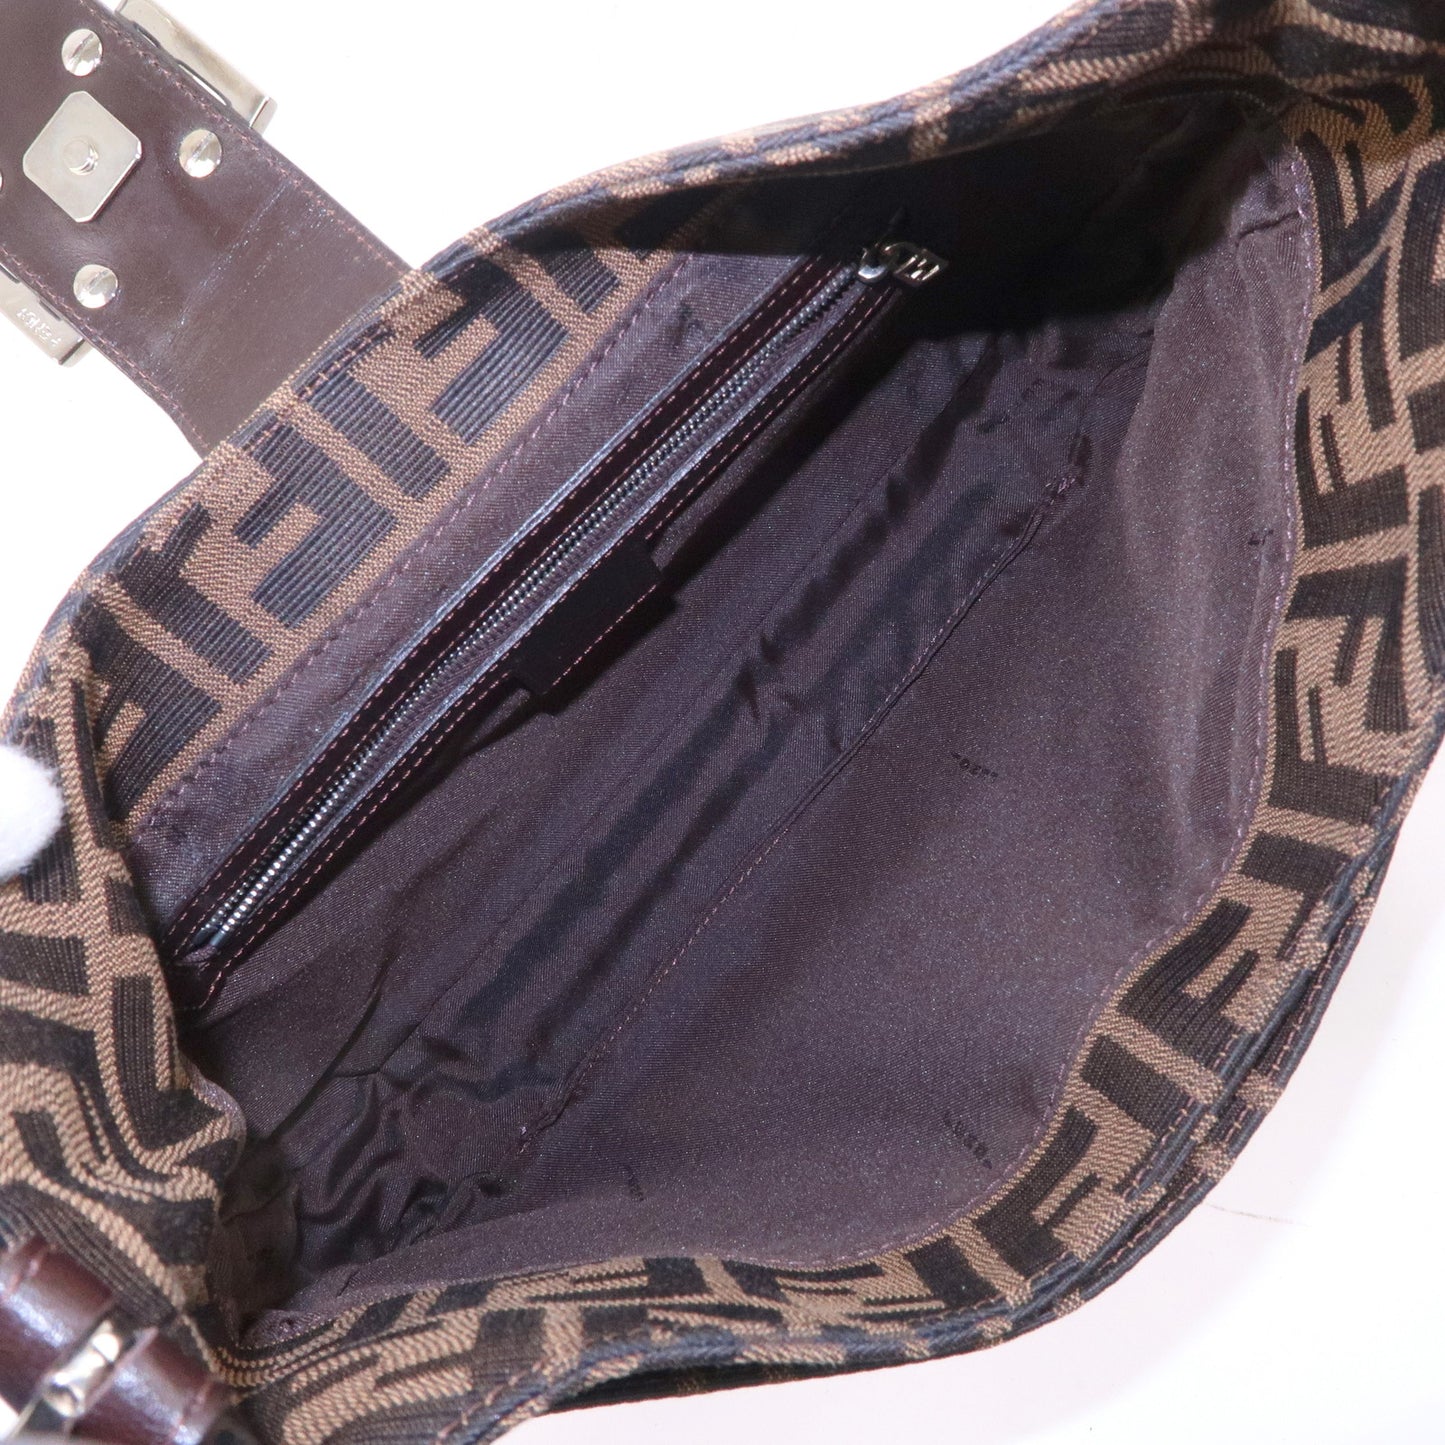 FENDI Zucca Canvas Leather Shoulder Bag Brown Black 26569